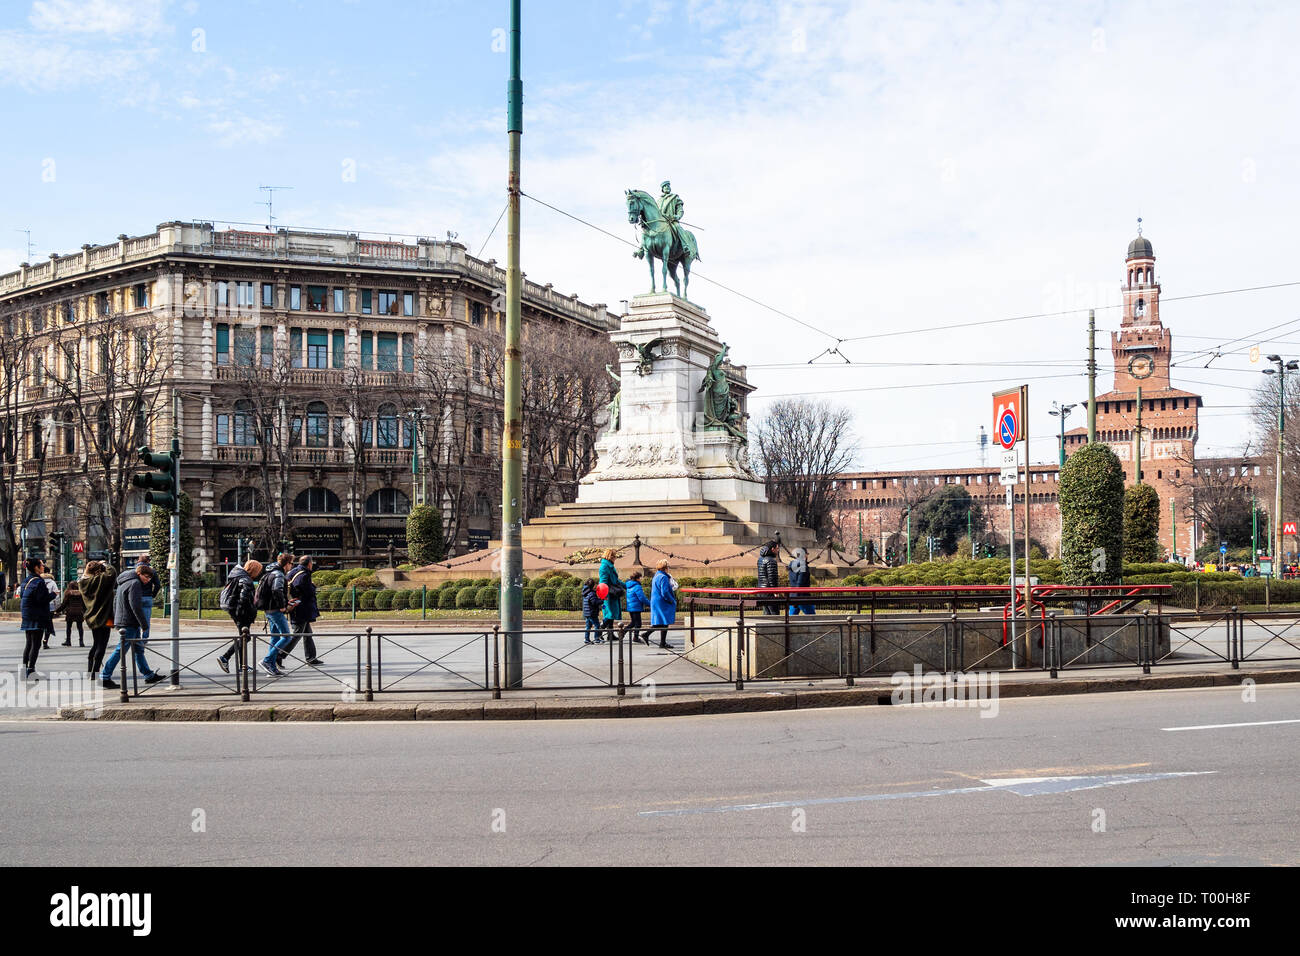 Mailand, Italien - 24. FEBRUAR 2019: Touristen auf Platz Largo Cairoli in der Nähe von Monument zu Giuseppe Garibaldi in Mailand Stadt. Die Statue wurde 1895 erstellt b Stockfoto